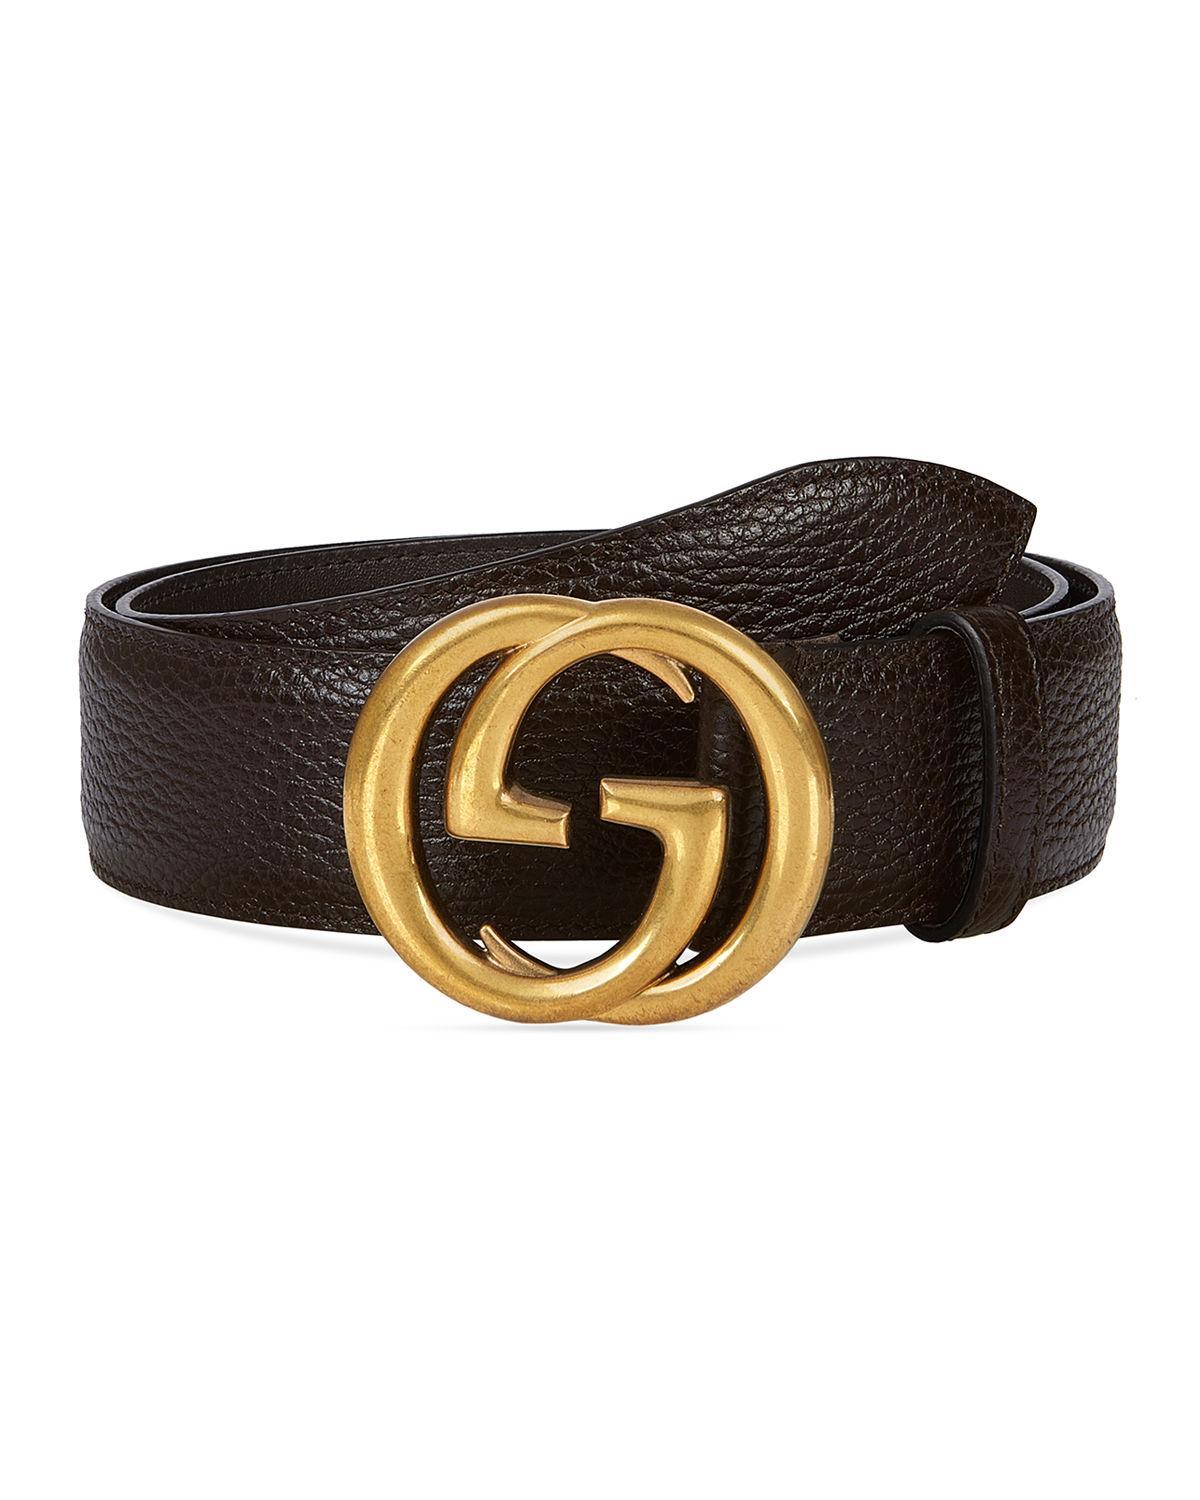 Gucci Men's Interlocking GG Marmont Belt in Brown for Men - Lyst